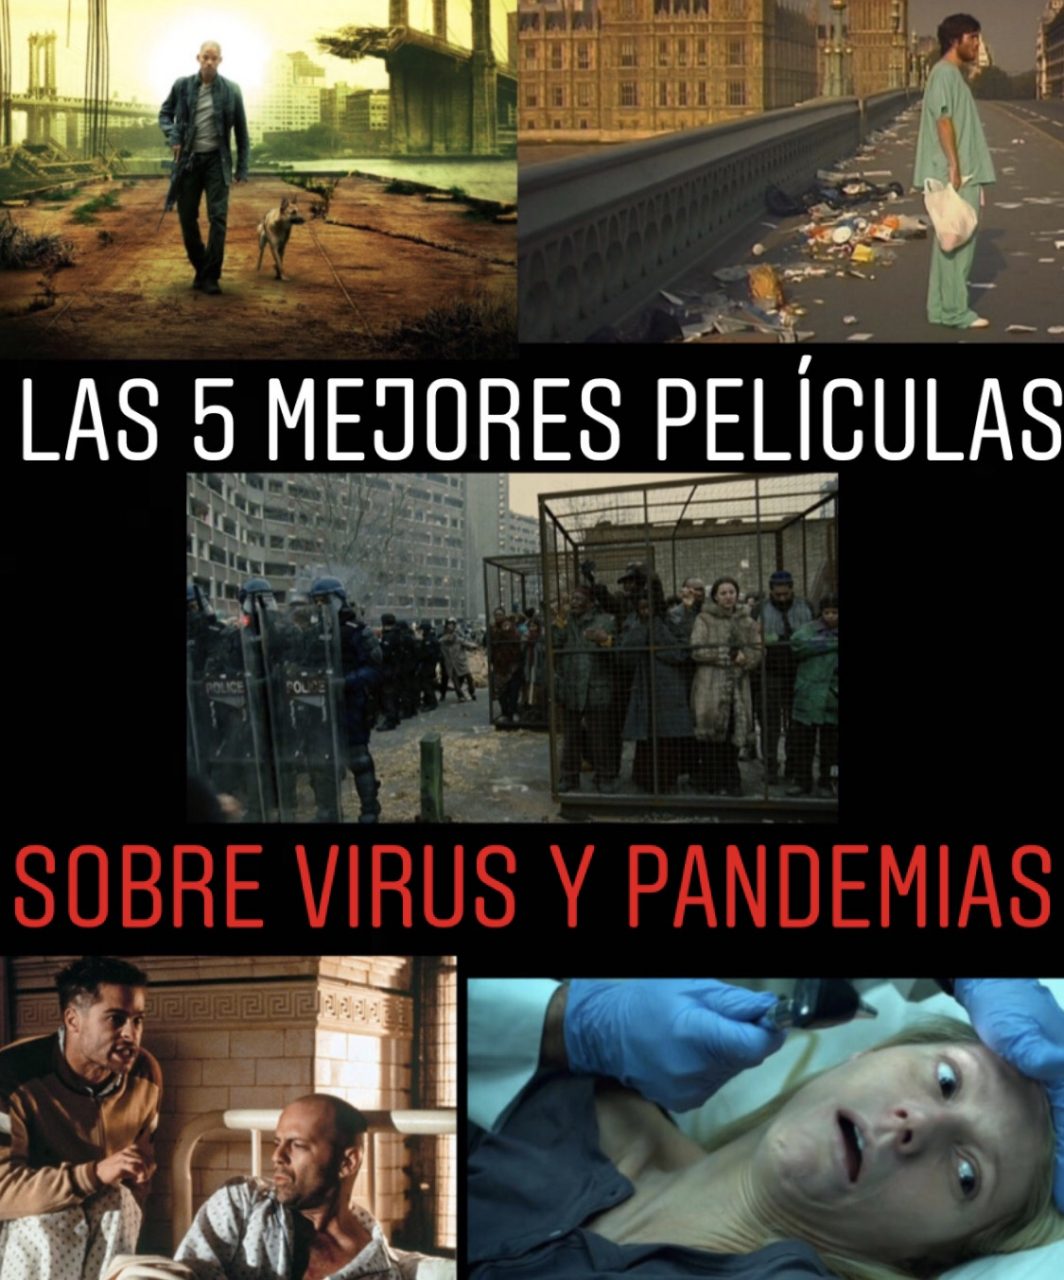 Las 5 mejores películas sobre virus y pandemias